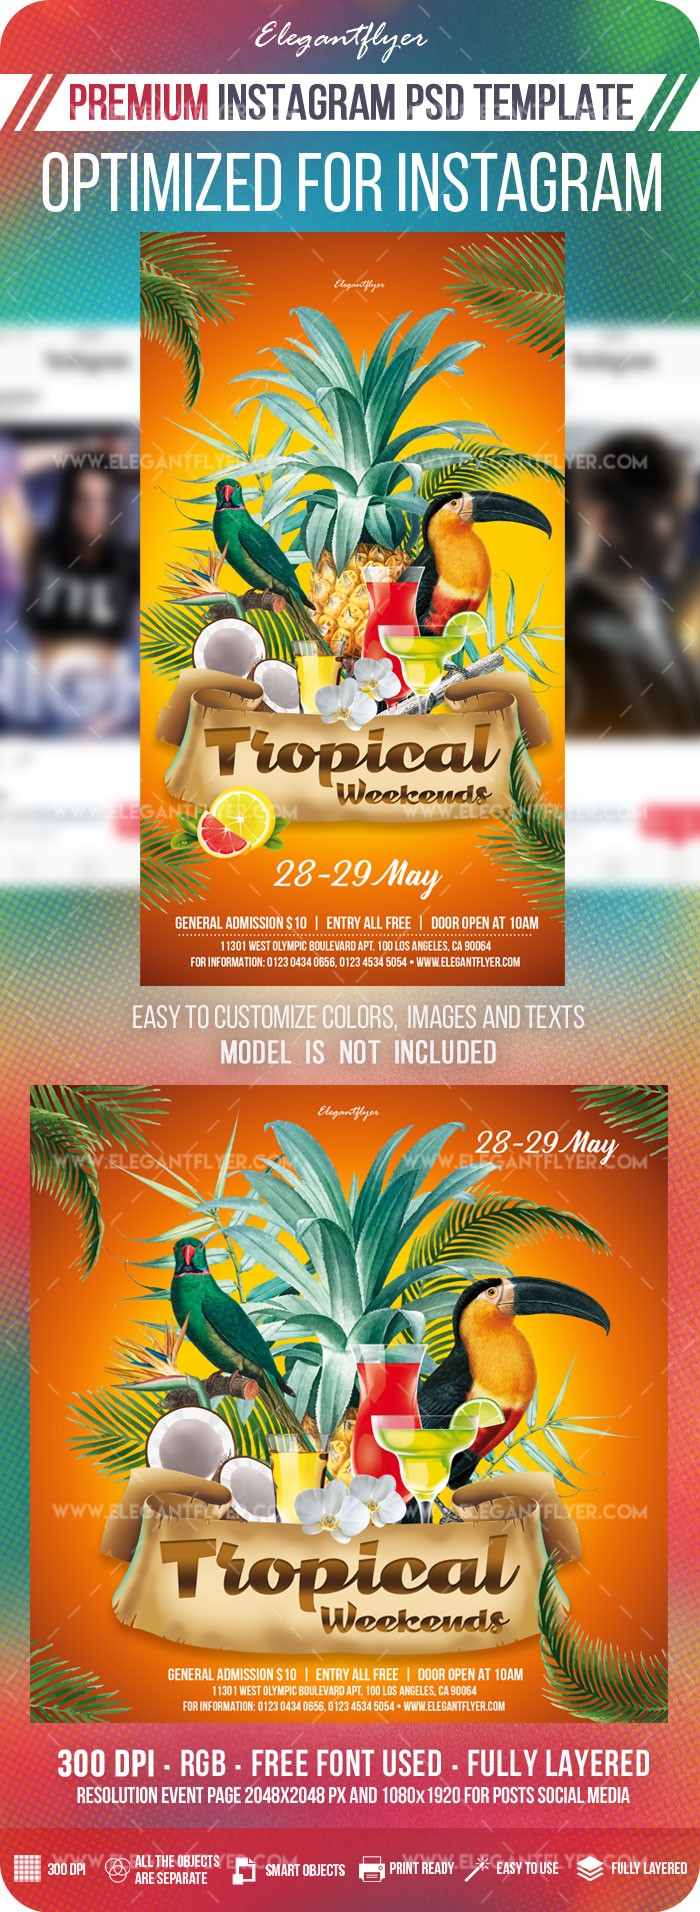 Tropical Weekends Instagram by ElegantFlyer